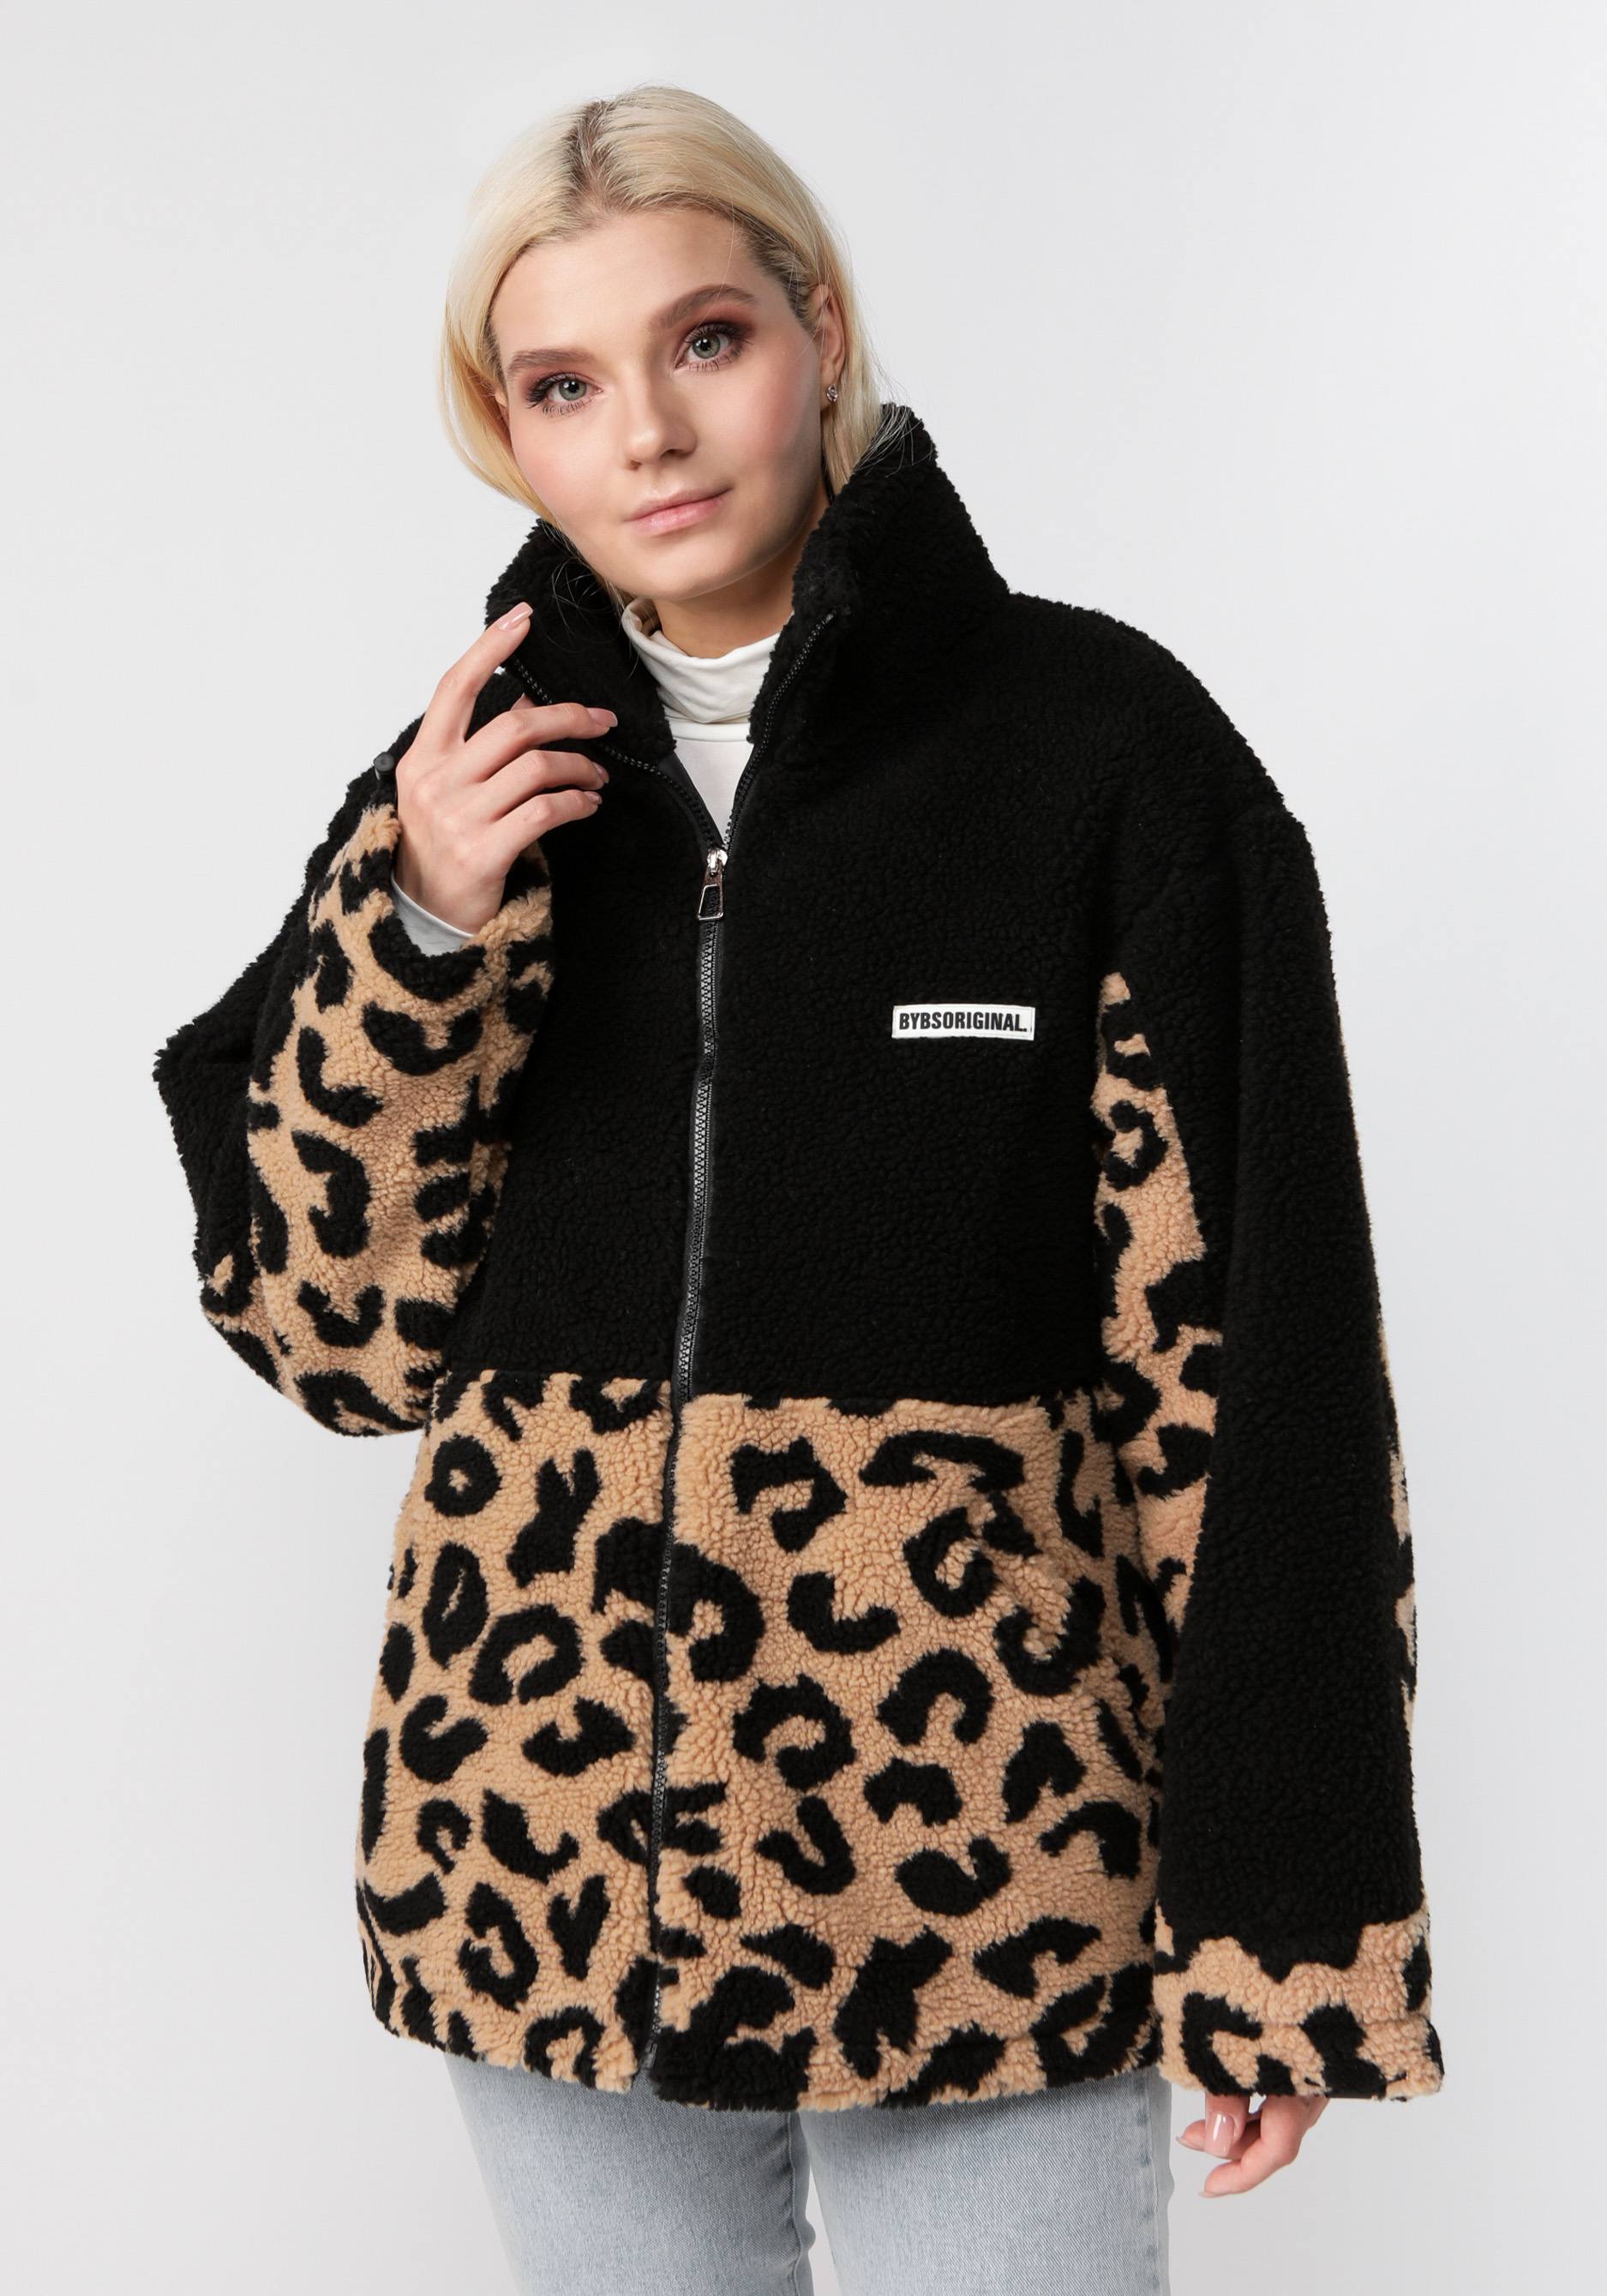 Куртка меховая с леопардовым принтом Zolinger, цвет коричневый, размер 50-56